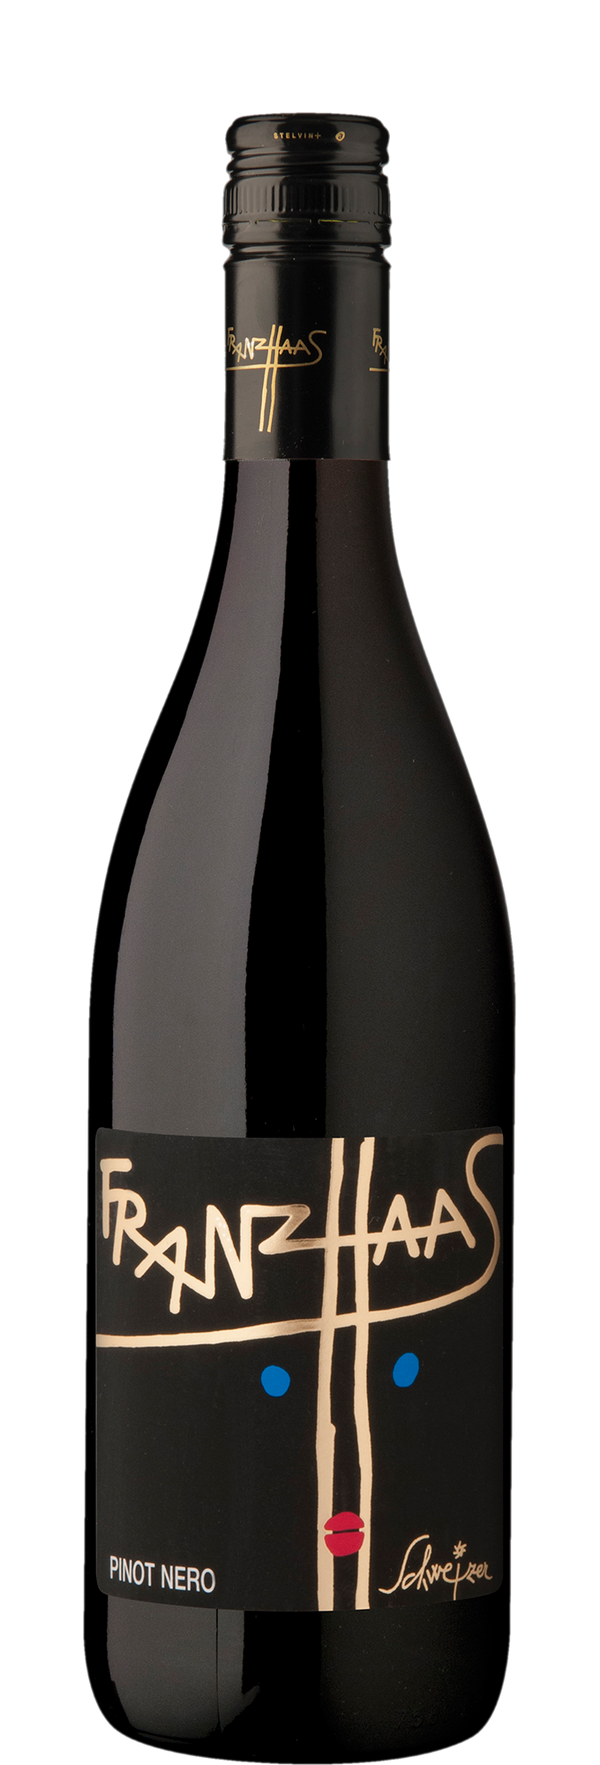 Pinot Nero "Schweizer" Alto Adige DOC 2016 - Franz Haas